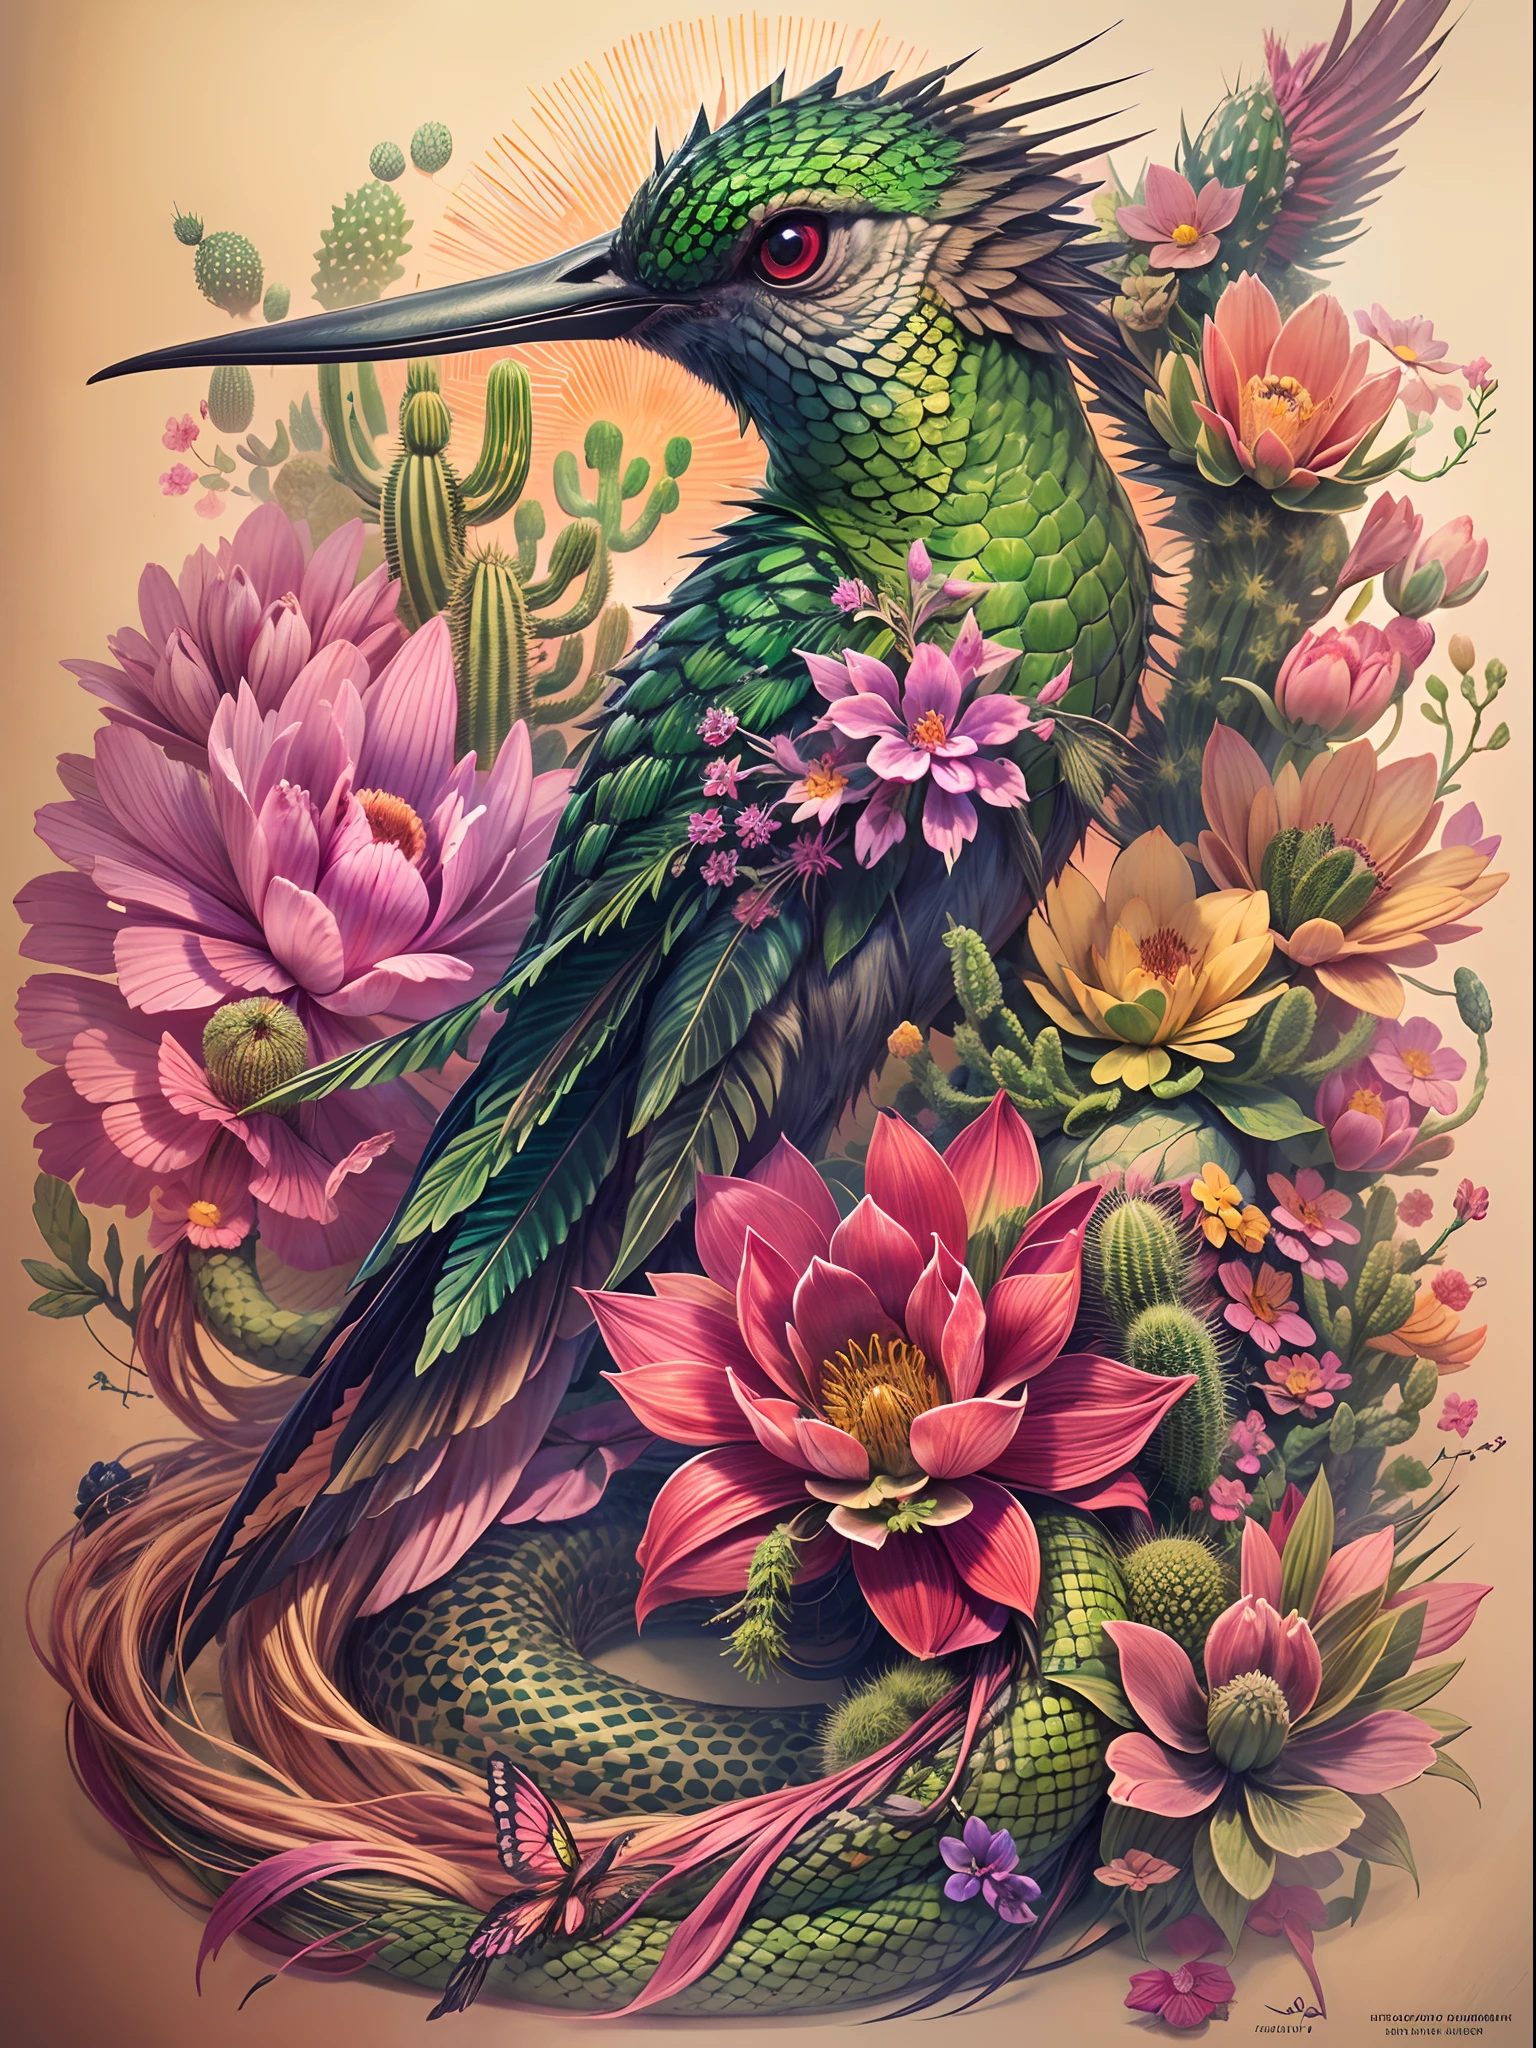 В этом дизайне татуировки, создайте сюрреалистическое существо, сочетающее в себе черты колибри, змея, и кактус, со сложными деталями, такими как переливающиеся перья, яркие зеленые чешуйки с шипами, и нежные цветы, растущие из колючего тела существа., на темном и угрюмом фоне с оттенками заката, создать завораживающий и незабываемый образ.